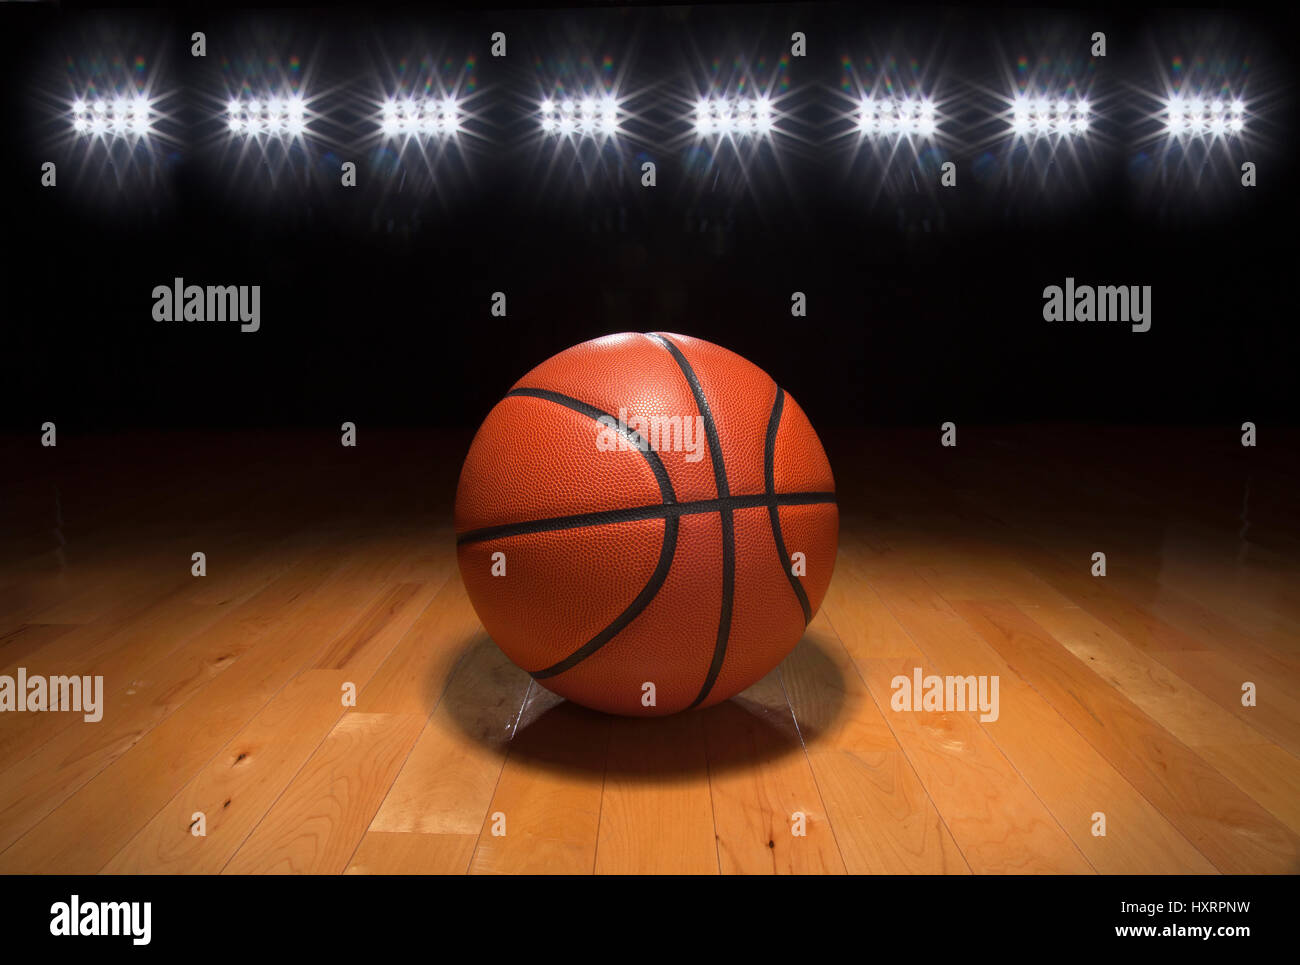 Una pelota de baloncesto sobre un piso de madera debajo de brillantes luces de arena Foto de stock